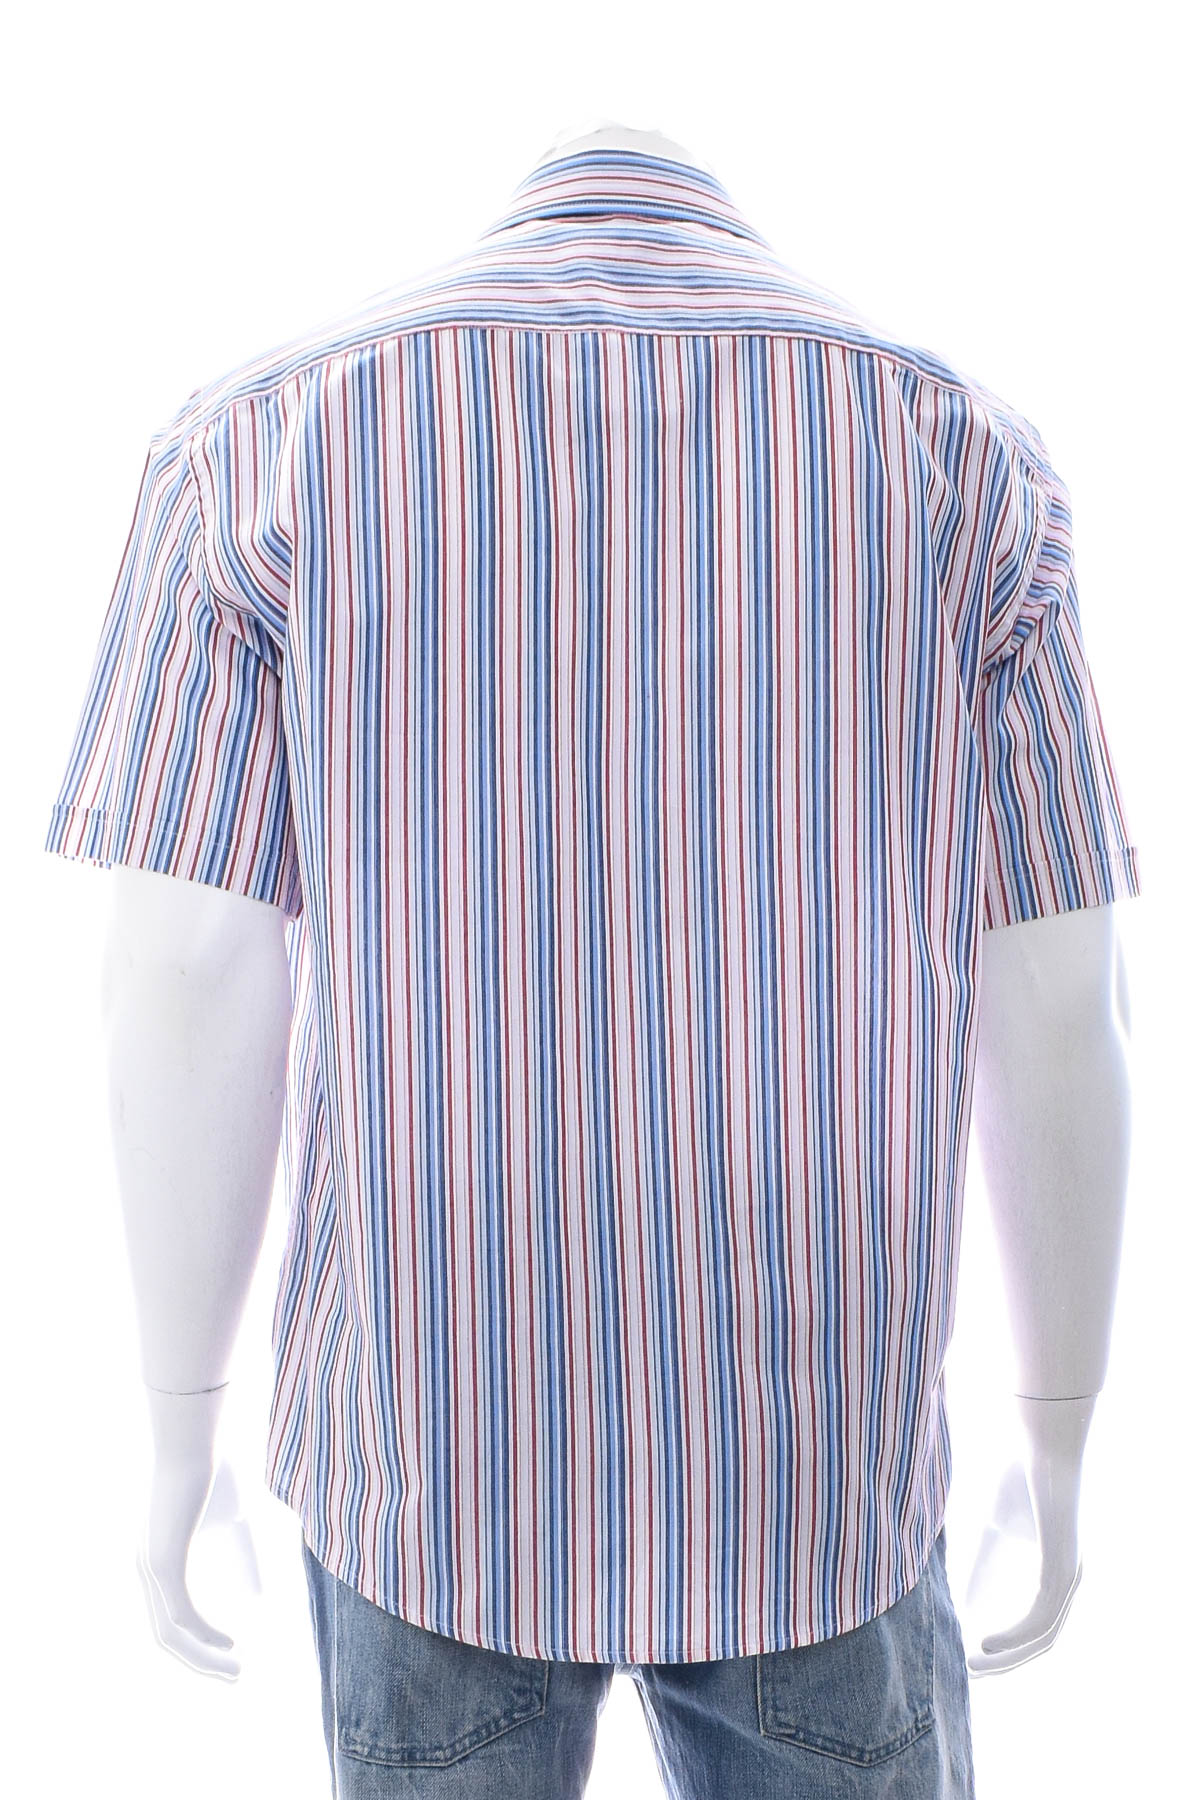 Ανδρικό πουκάμισο - Bexleys - 1